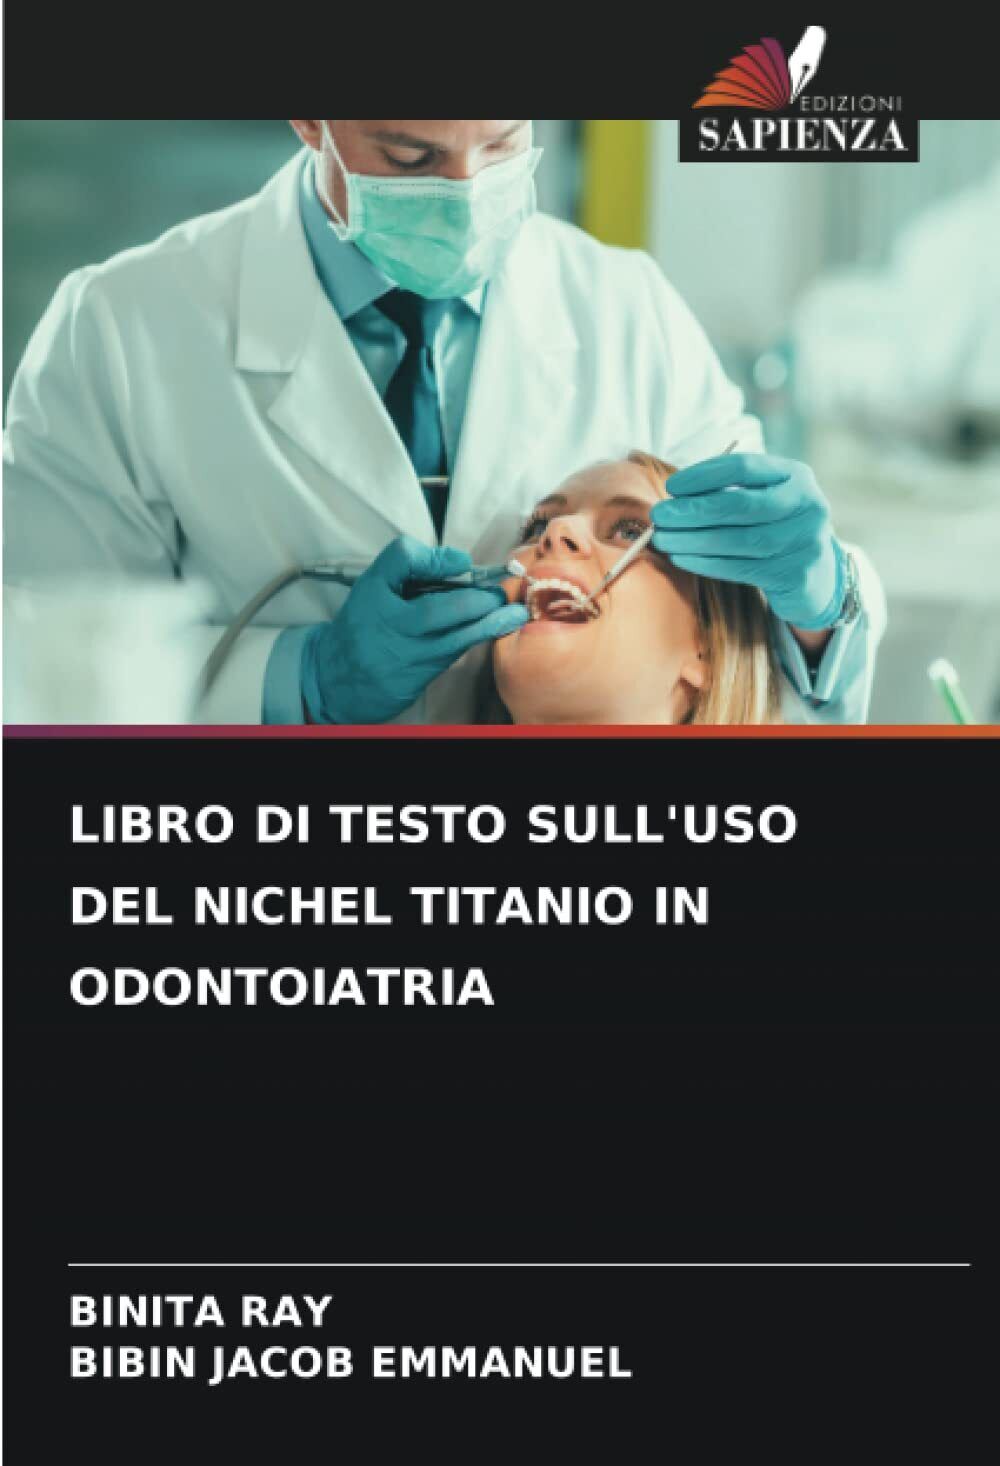 LIBRO DI TESTO SULL'USO DEL NICHEL TITANIO IN ODONTOIATRIA - Sapienza, 2022